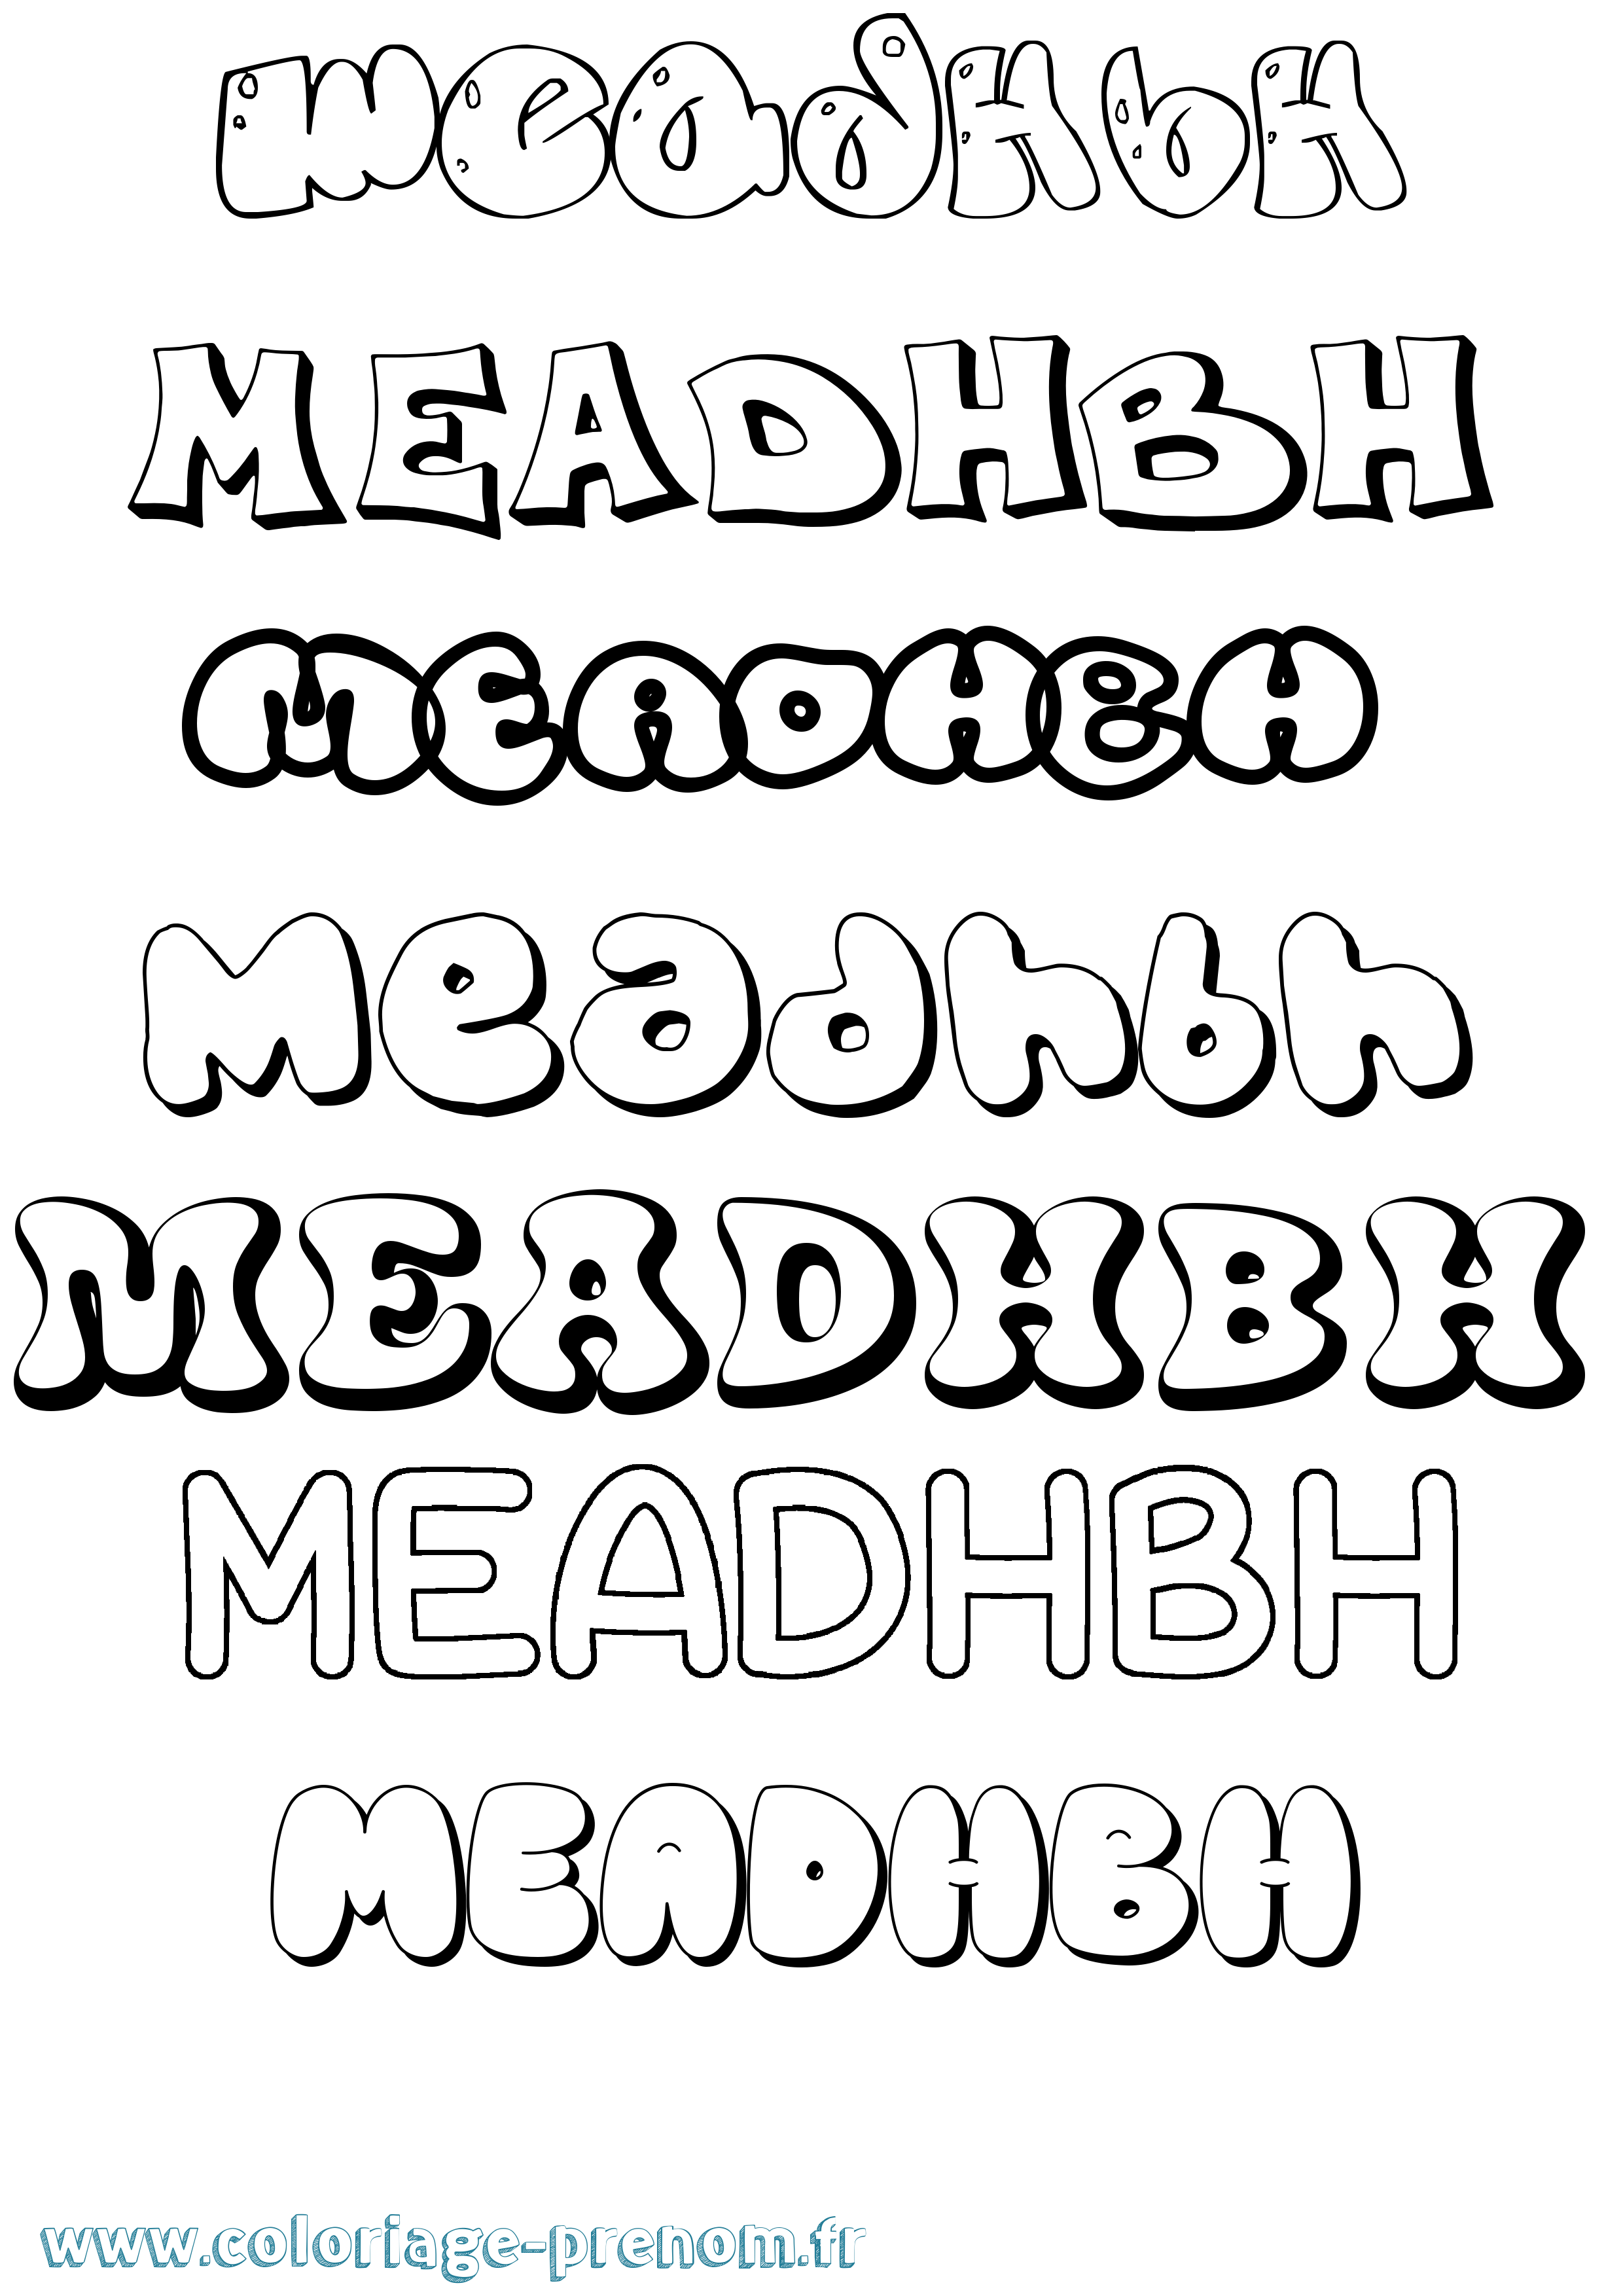 Coloriage prénom Meadhbh Bubble